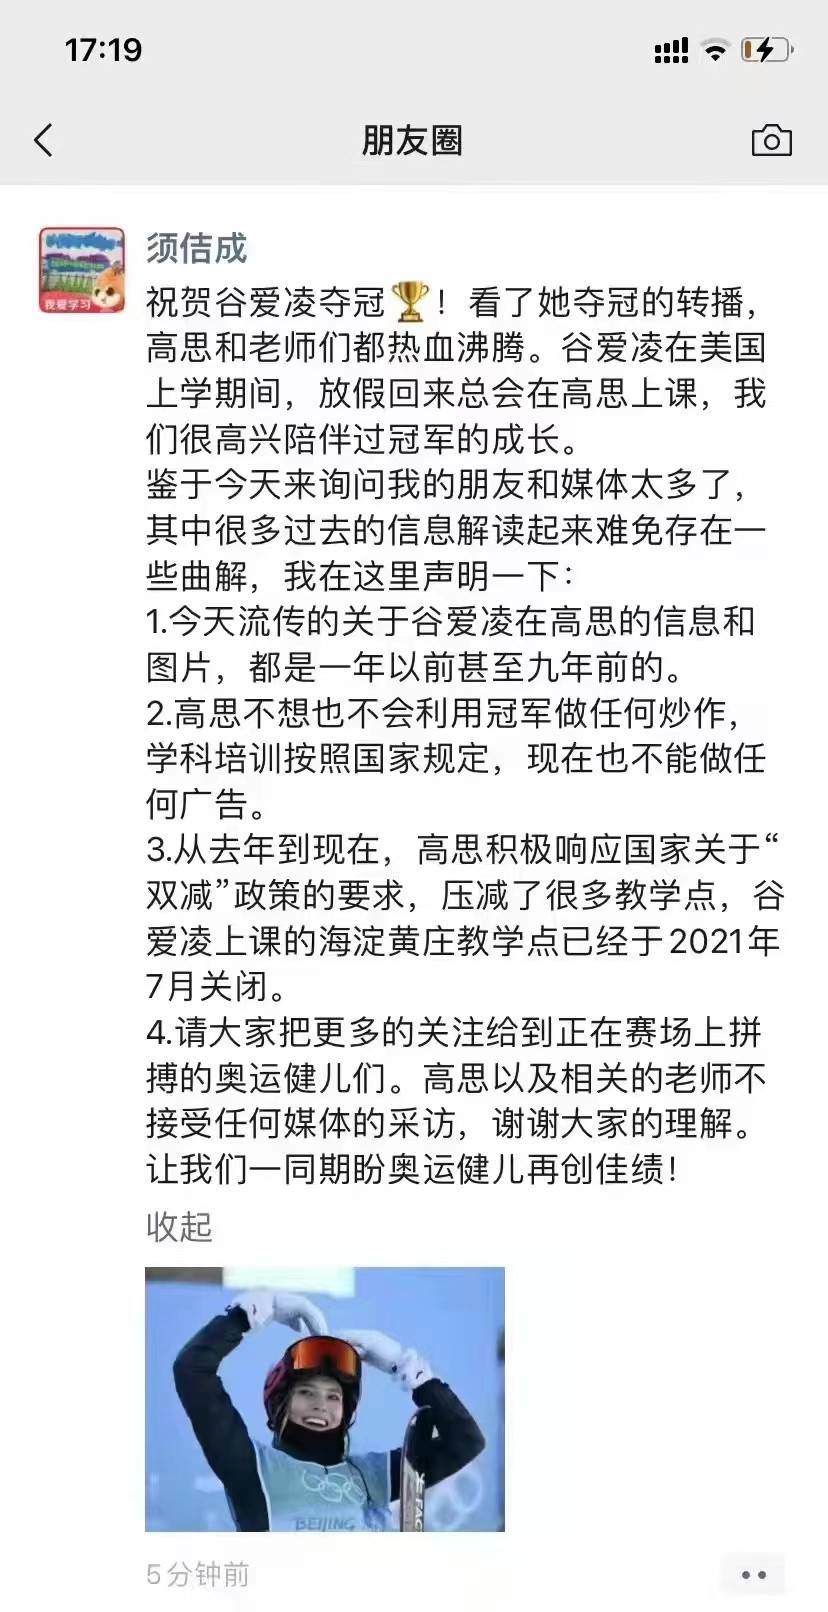 高思教育CEO: 谷爱凌上课的海淀黄庄教学点已关闭, 不会用冠军炒作